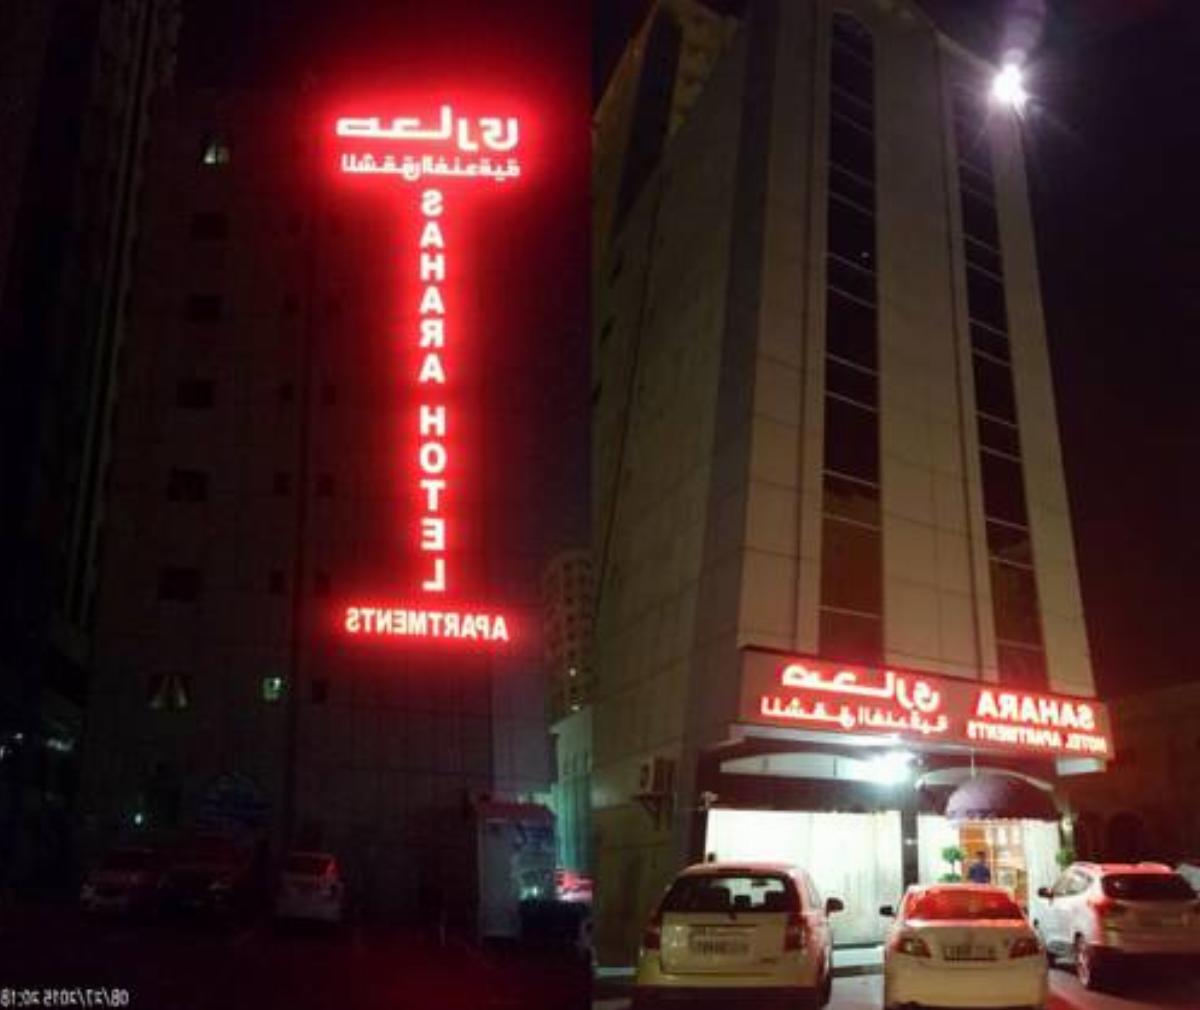 Sahara Hotel Apartments Hotel Sharjah United Arab Emirates